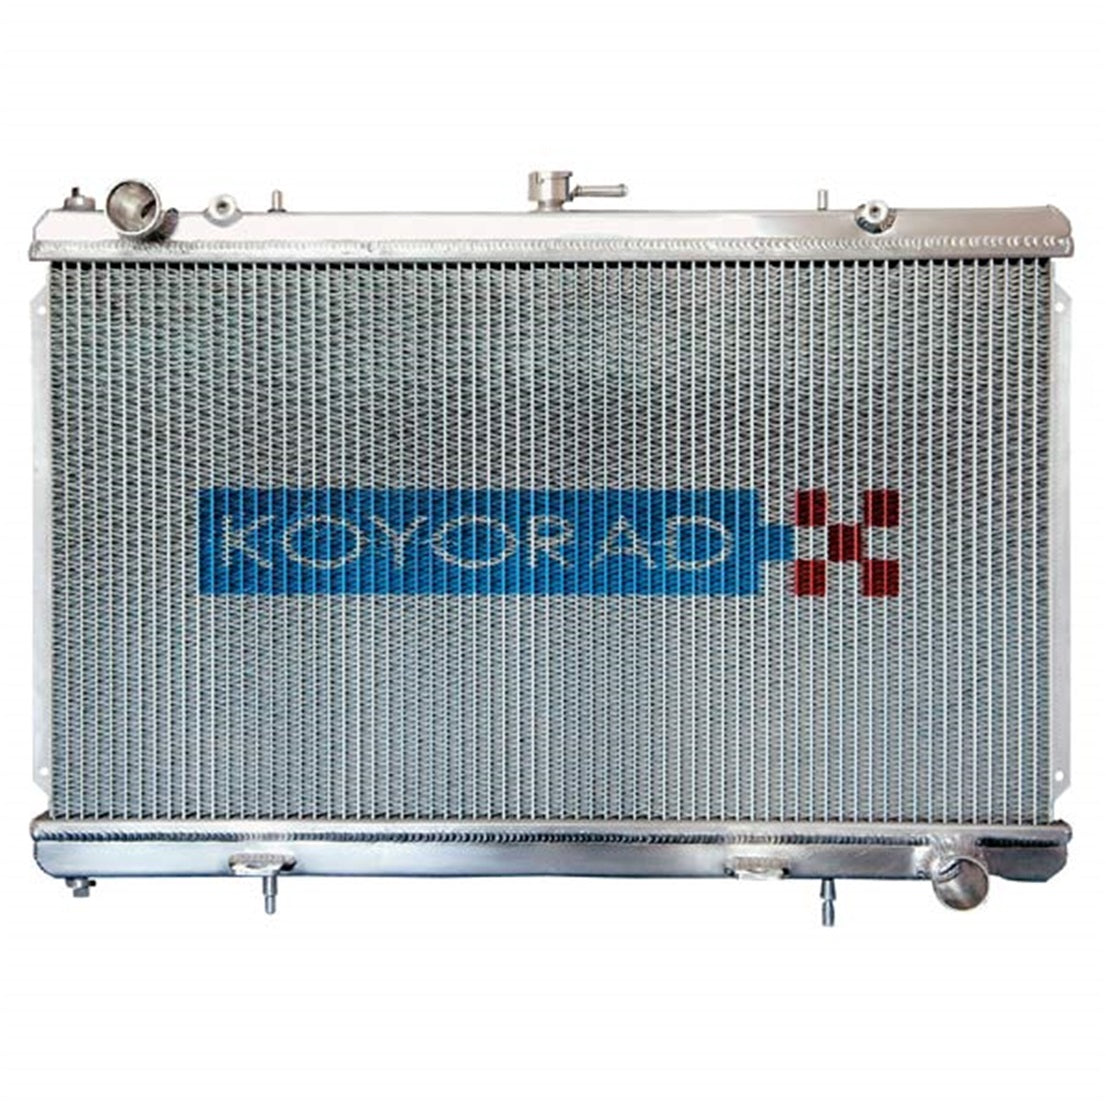 Koyorad Aluminum Radiator - Mazda RX8 Man 04-08 (13B-MSP)